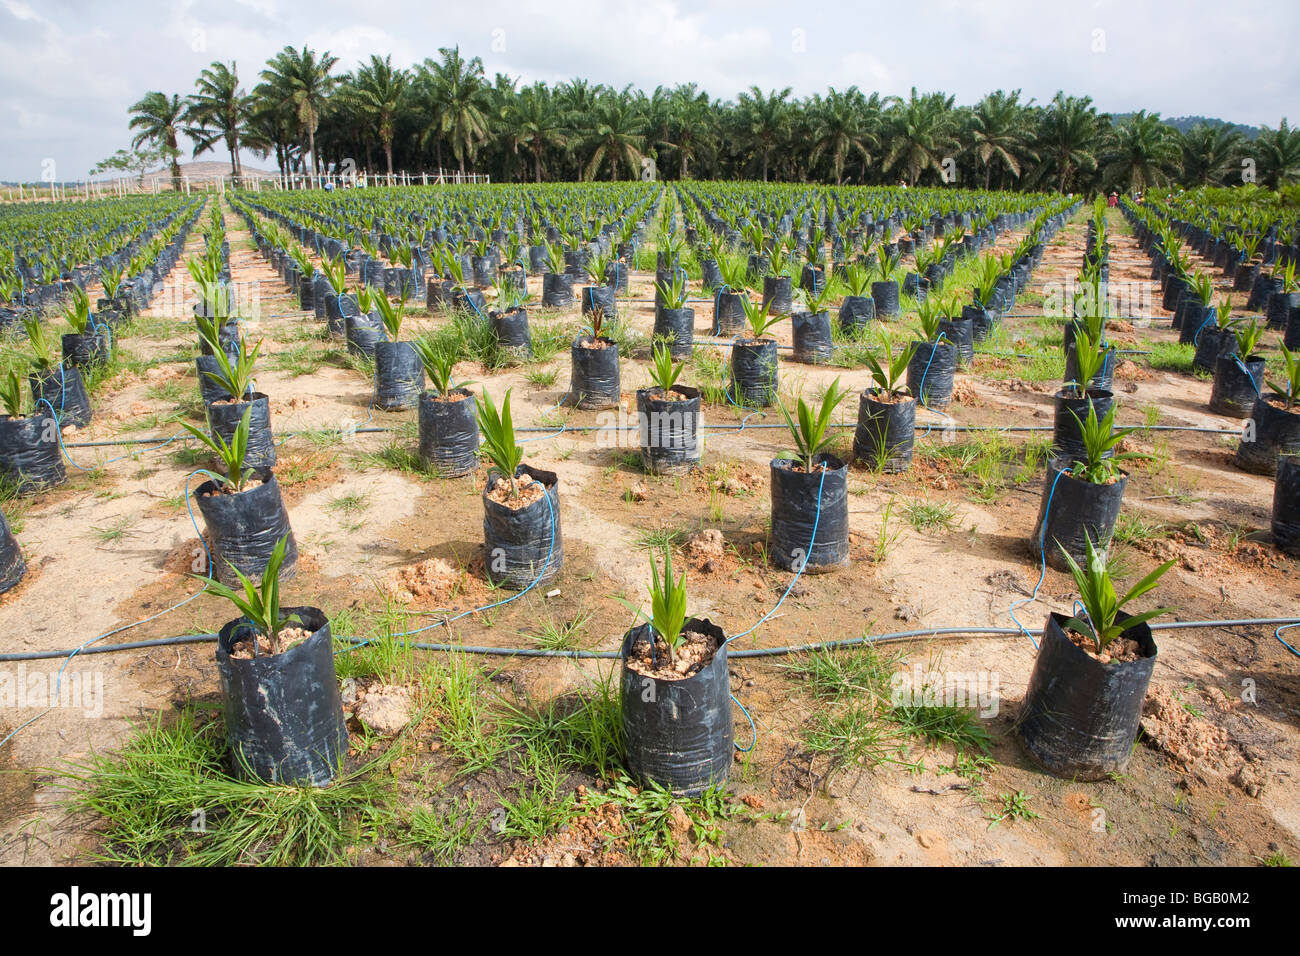 En el sitio de viveros de árboles de palma de aceite utilizando el riego  por goteo para regar las plantas en macetas. La Sindora Plantación de  aceite de palma Fotografía de stock -